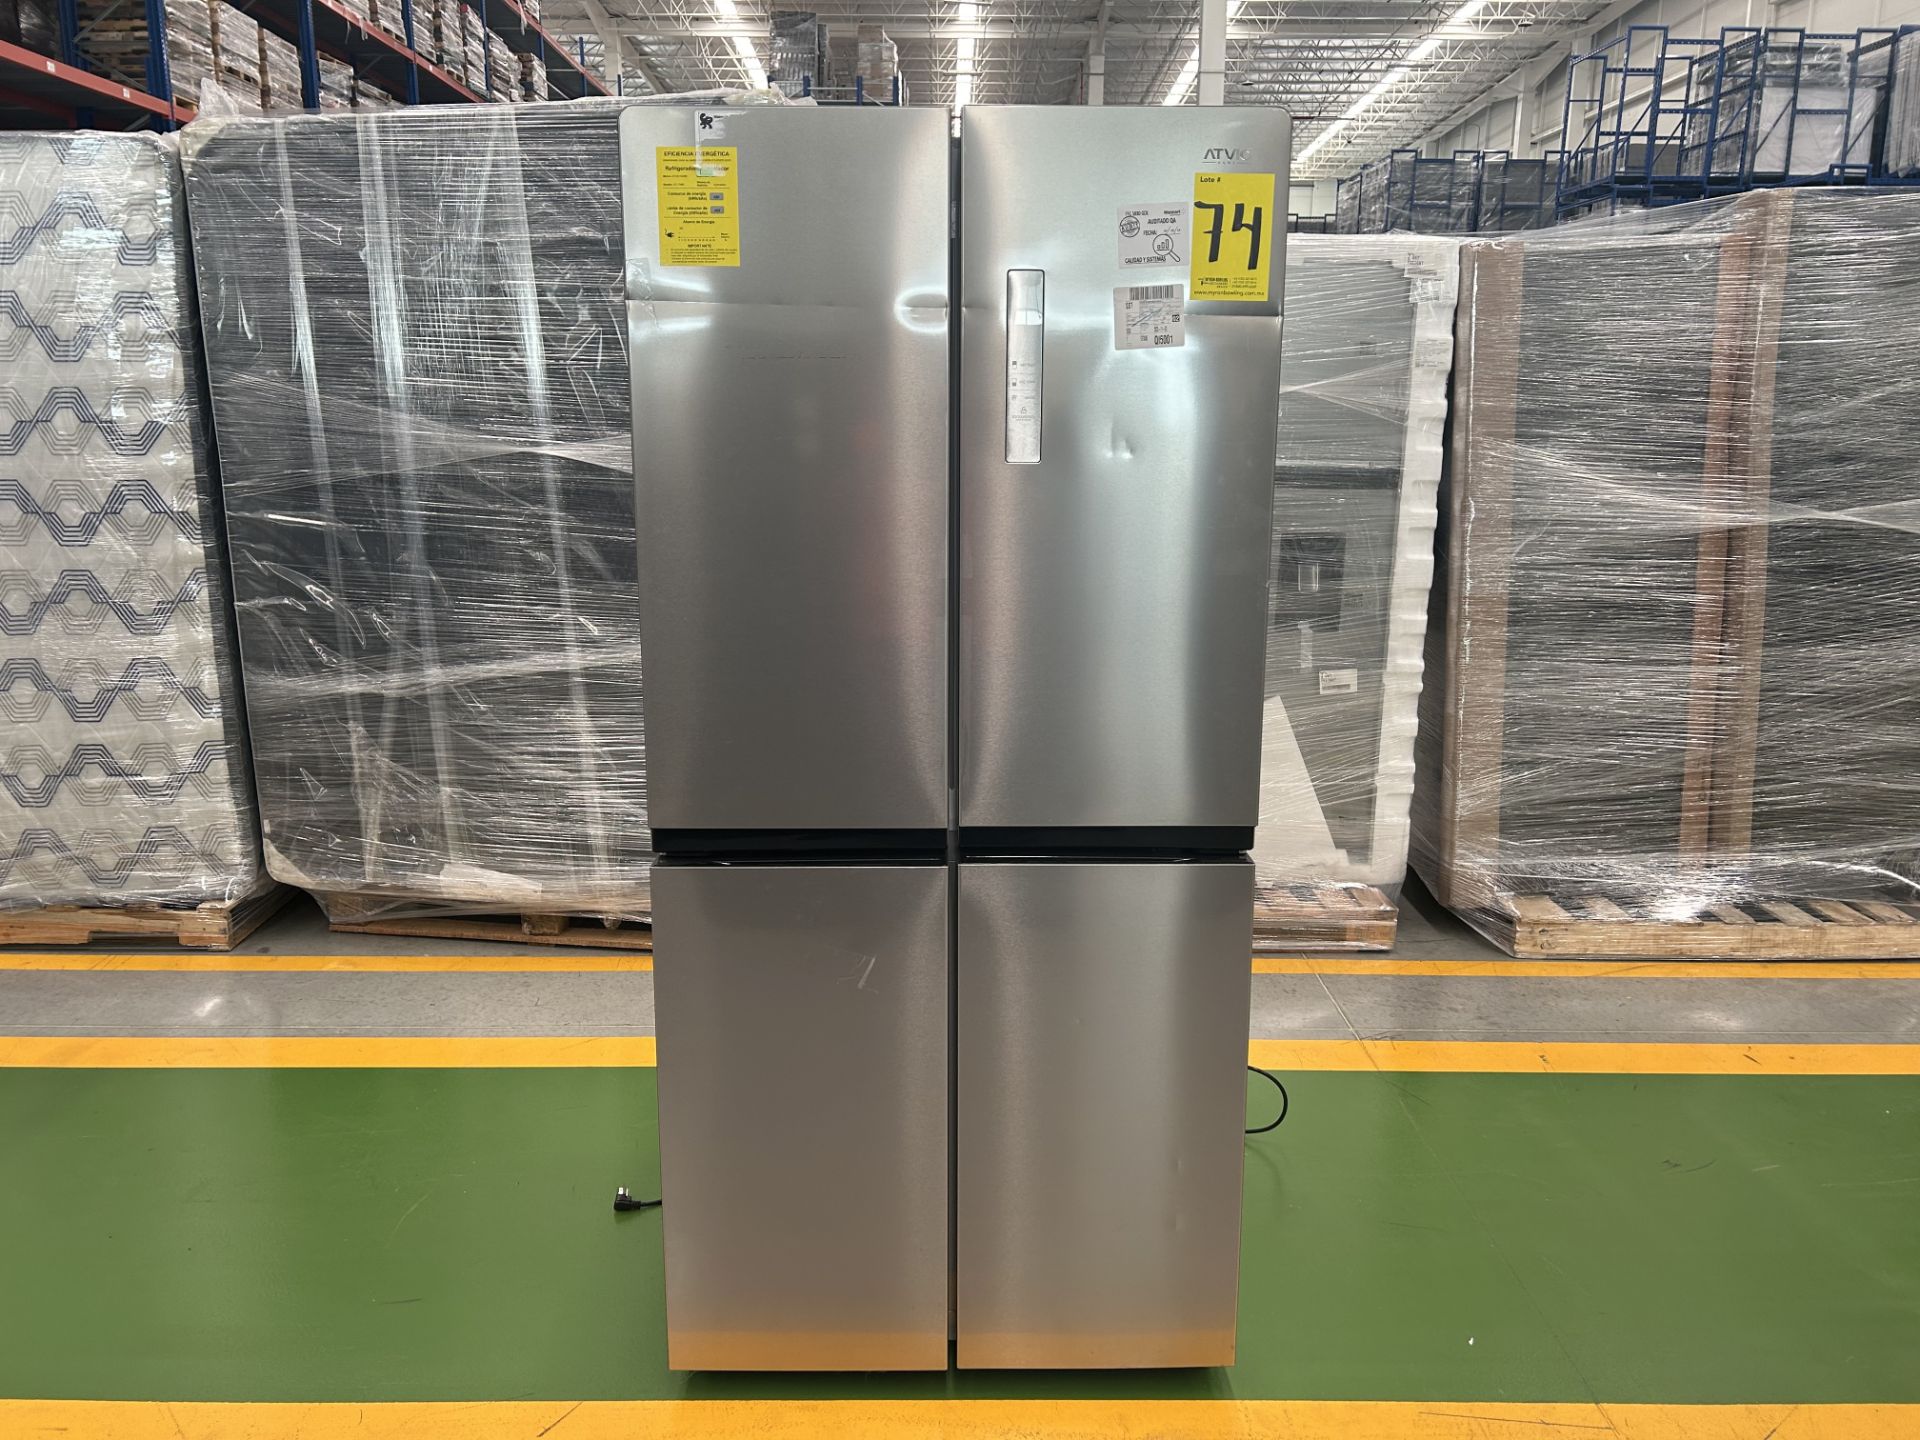 1 Refrigerador Marca ATVIO, Modelo AT17MD, Serie 160093, Color GRIS (No se Asegura su Funcionamient